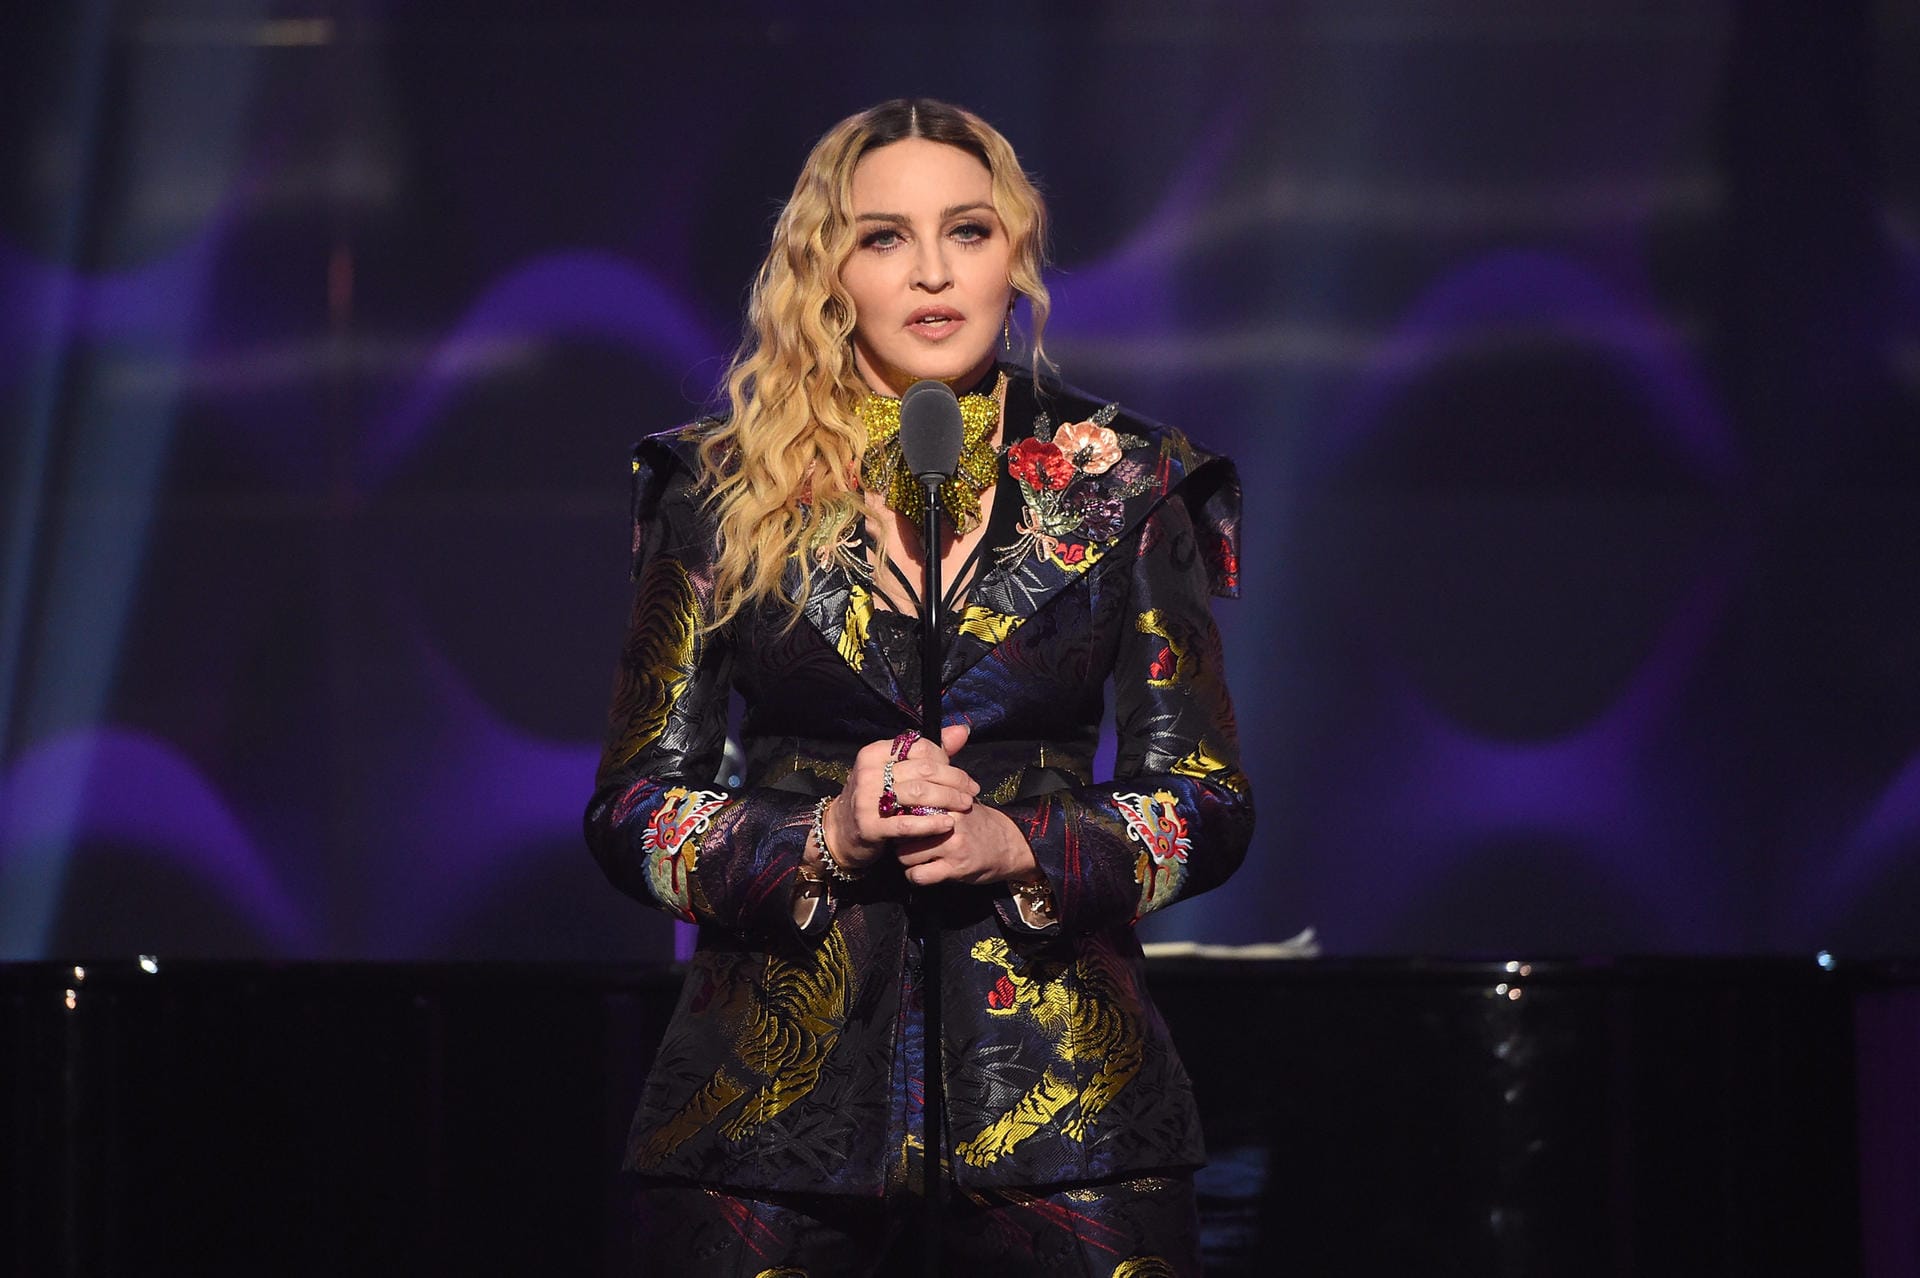 Die "Queen of Pop" wurde schon mehrfach zum Stalking-Opfer: Einer ihrer Verfolger drohte Madonna 1995 damit, ihr die Kehle durchzuschneiden, wenn sie seine Liebe nicht erwidere. Die Folge: Haft und Psychiatrie.